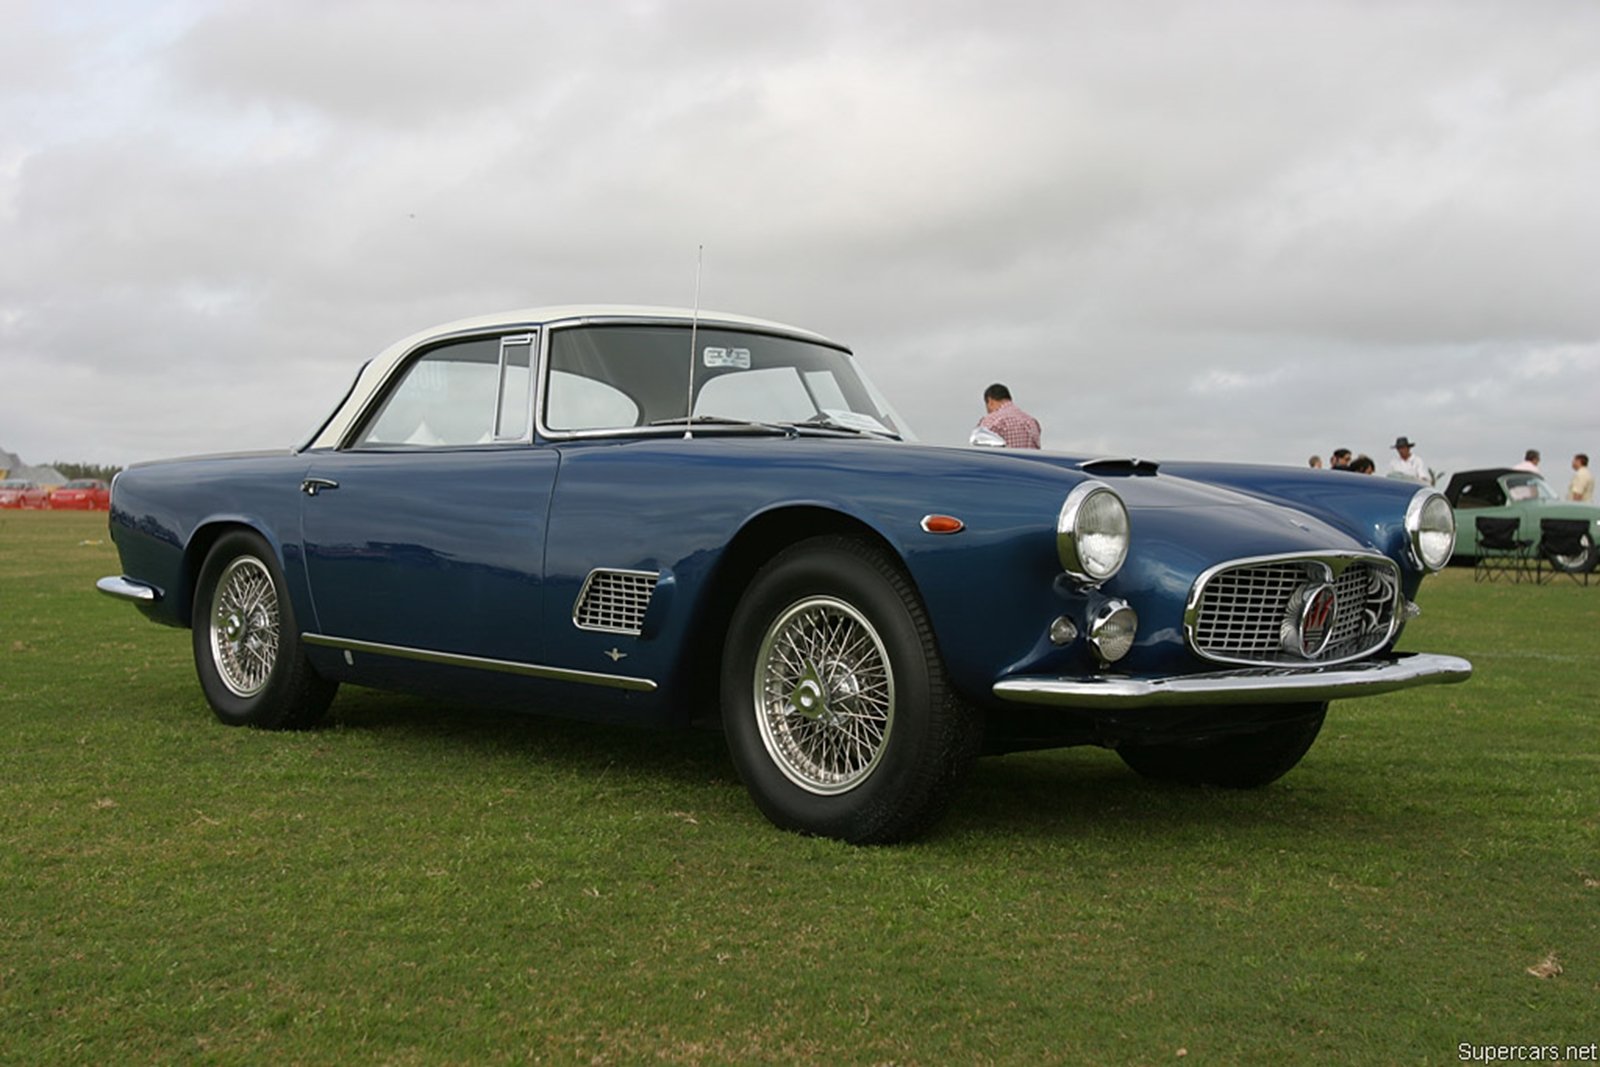 1959, Maserati, 3500gtcoup1, 1600x1067 Wallpaper